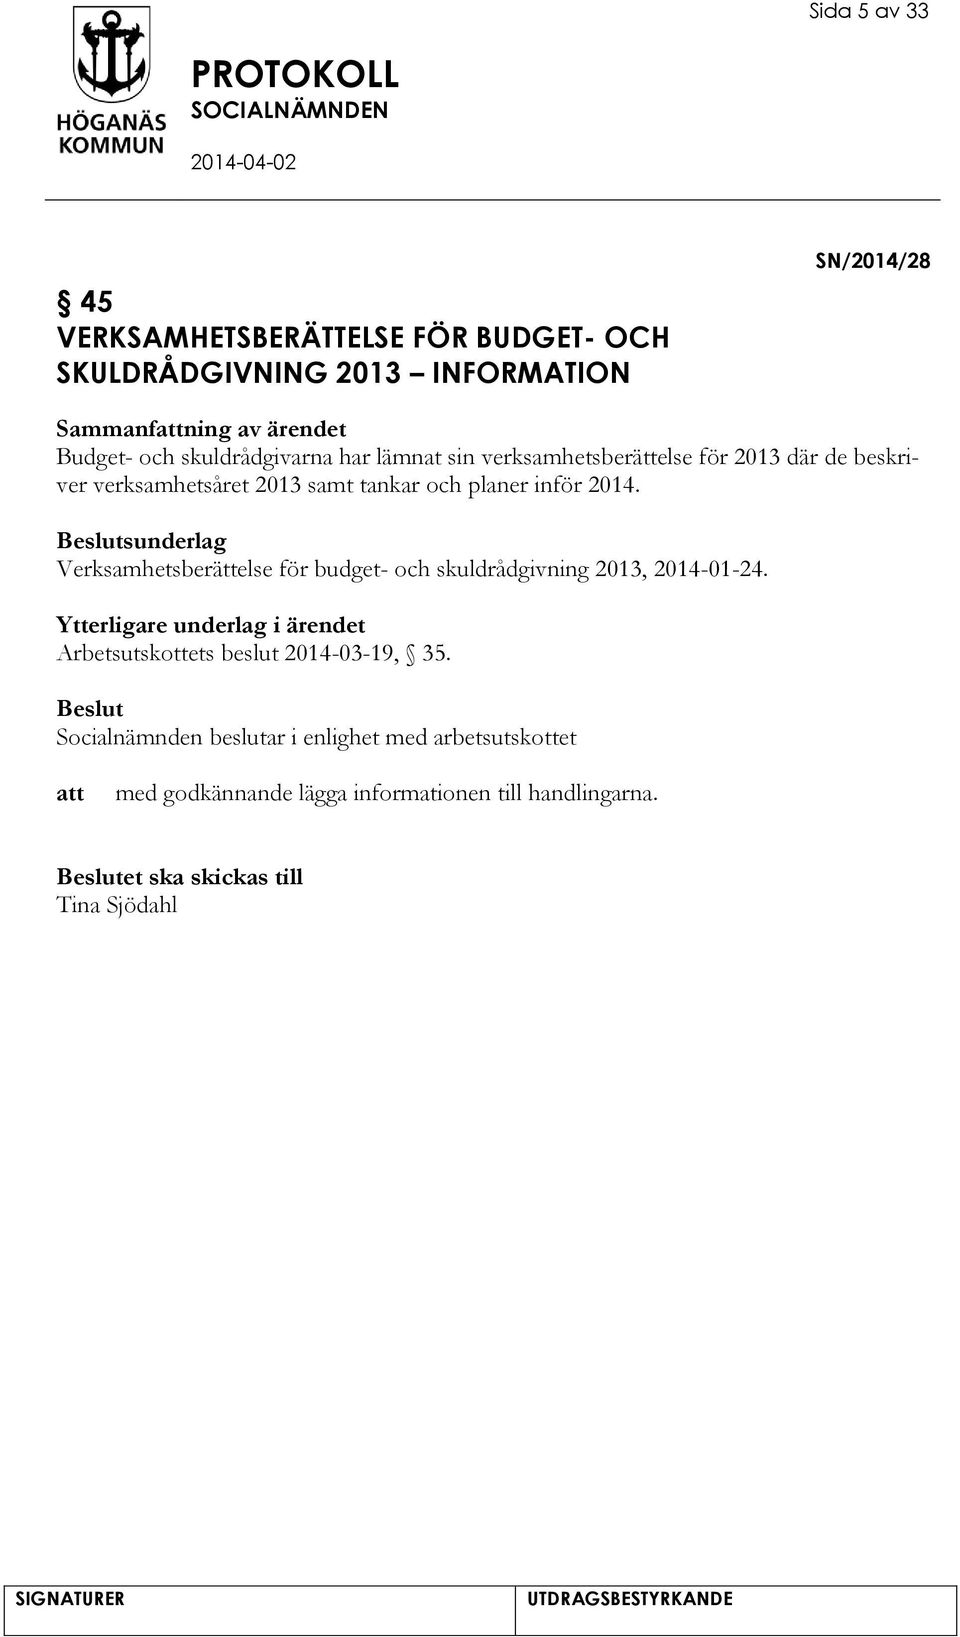 sunderlag Verksamhetsberättelse för budget- och skuldrådgivning 2013, 2014-01-24.